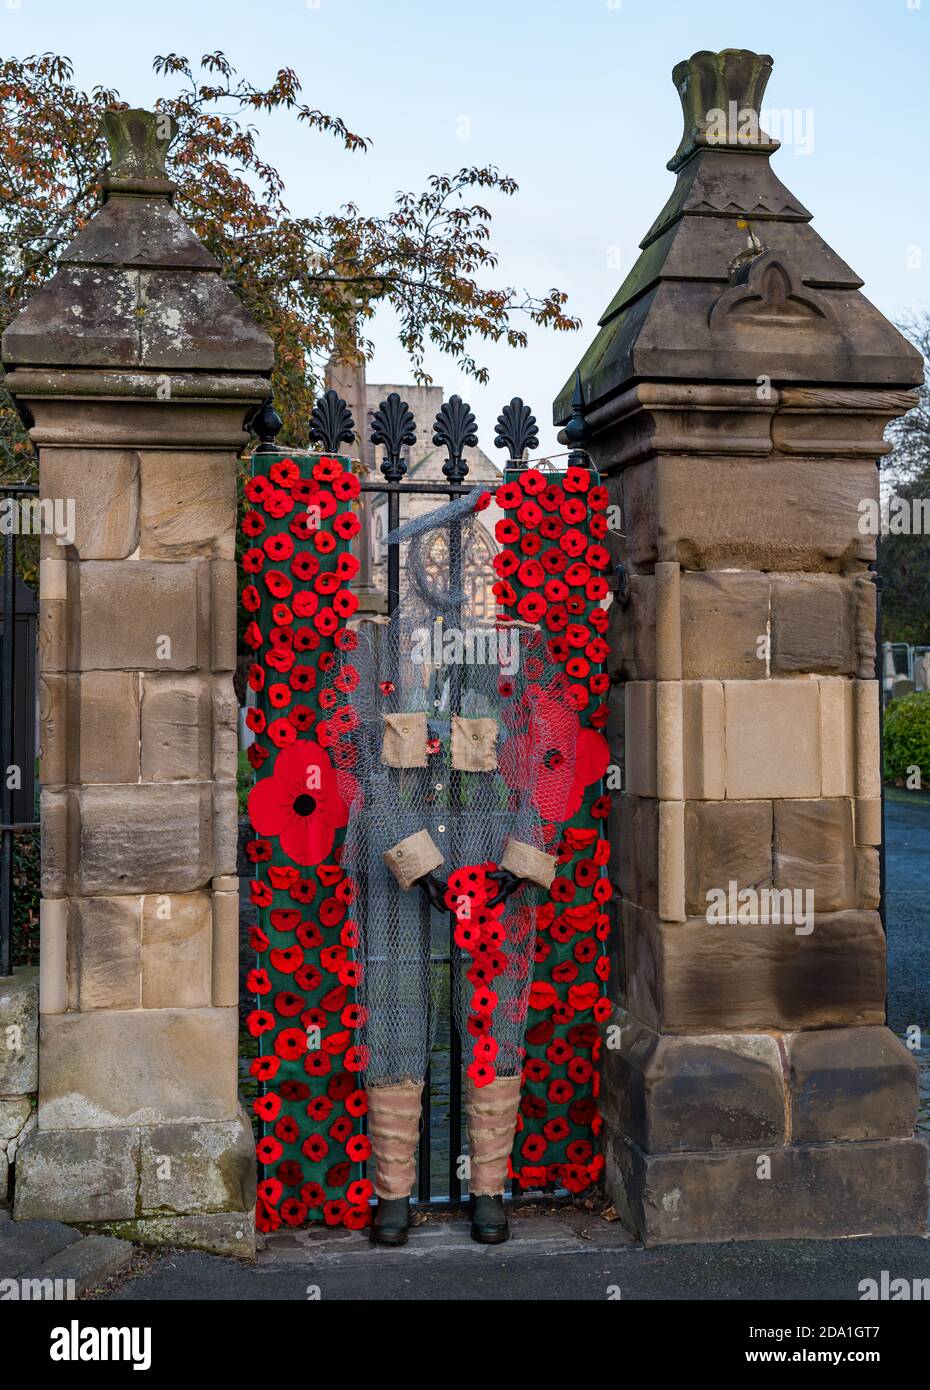 Mostra di papavero sul cancello per Scottish Poppy Appeal Remembrance Day, St Mary's Parish Church, Haddington, East Lothian, Scotland, UK Foto Stock